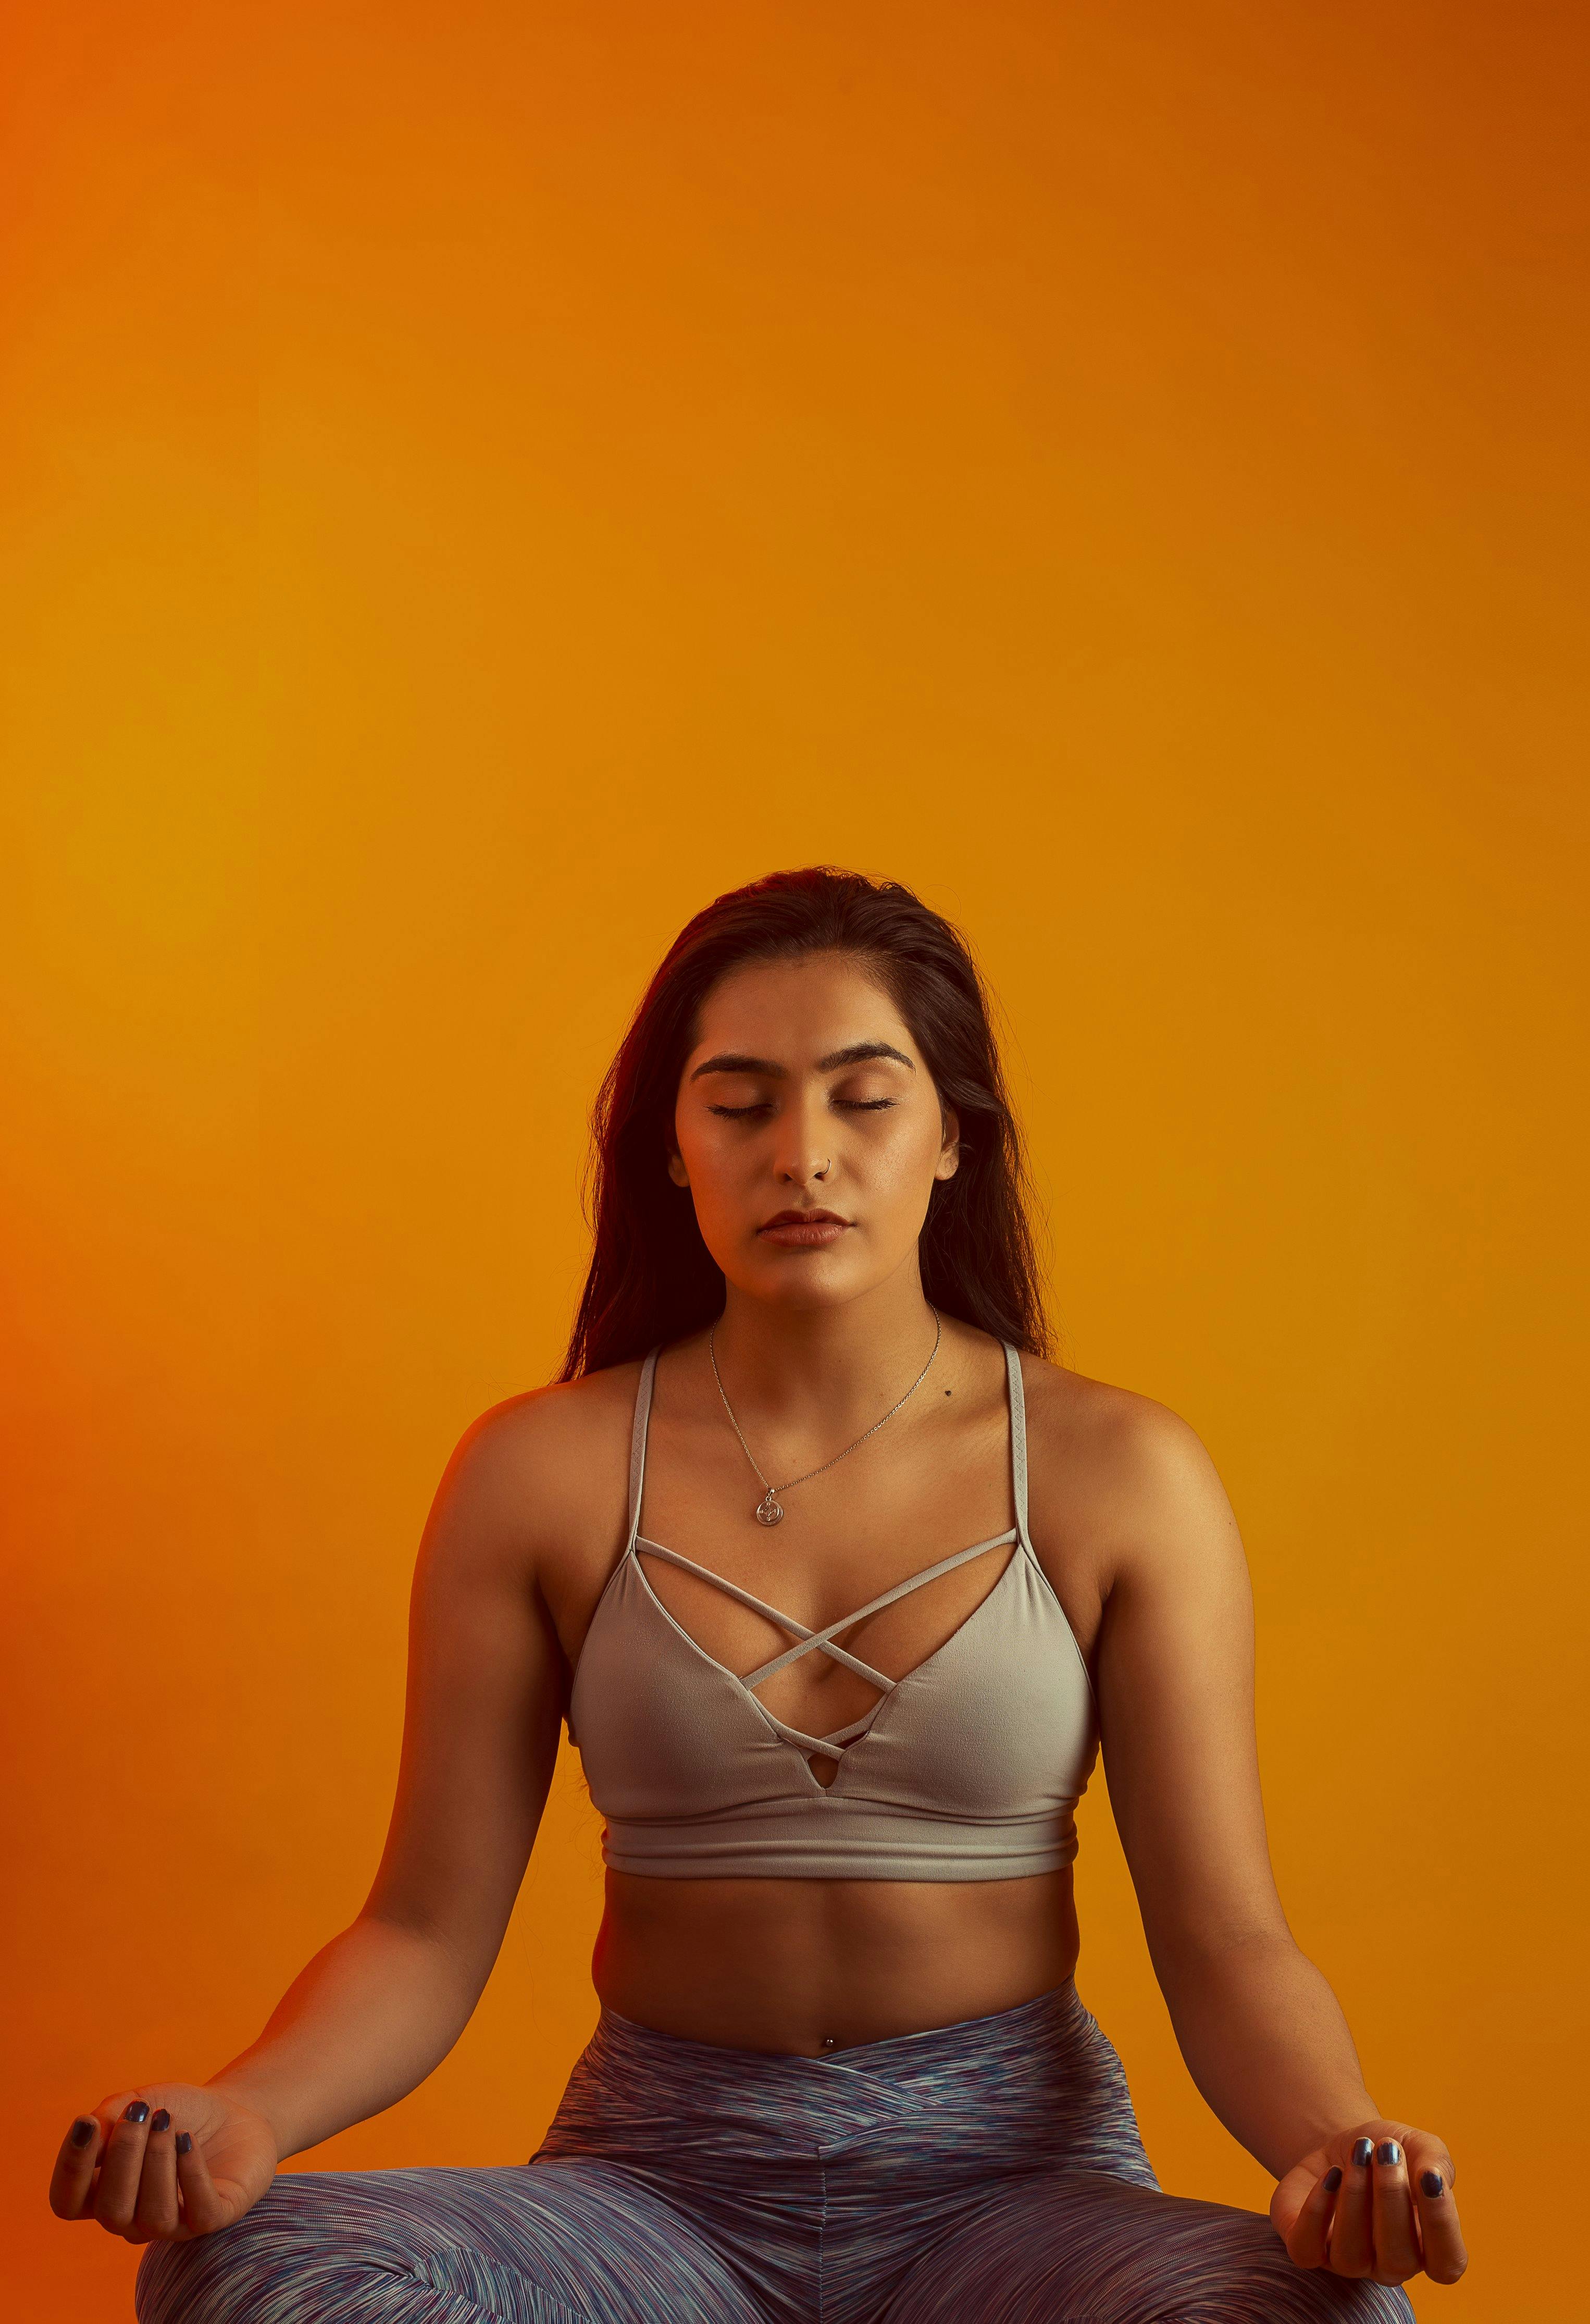 woman doing yoga against orange background